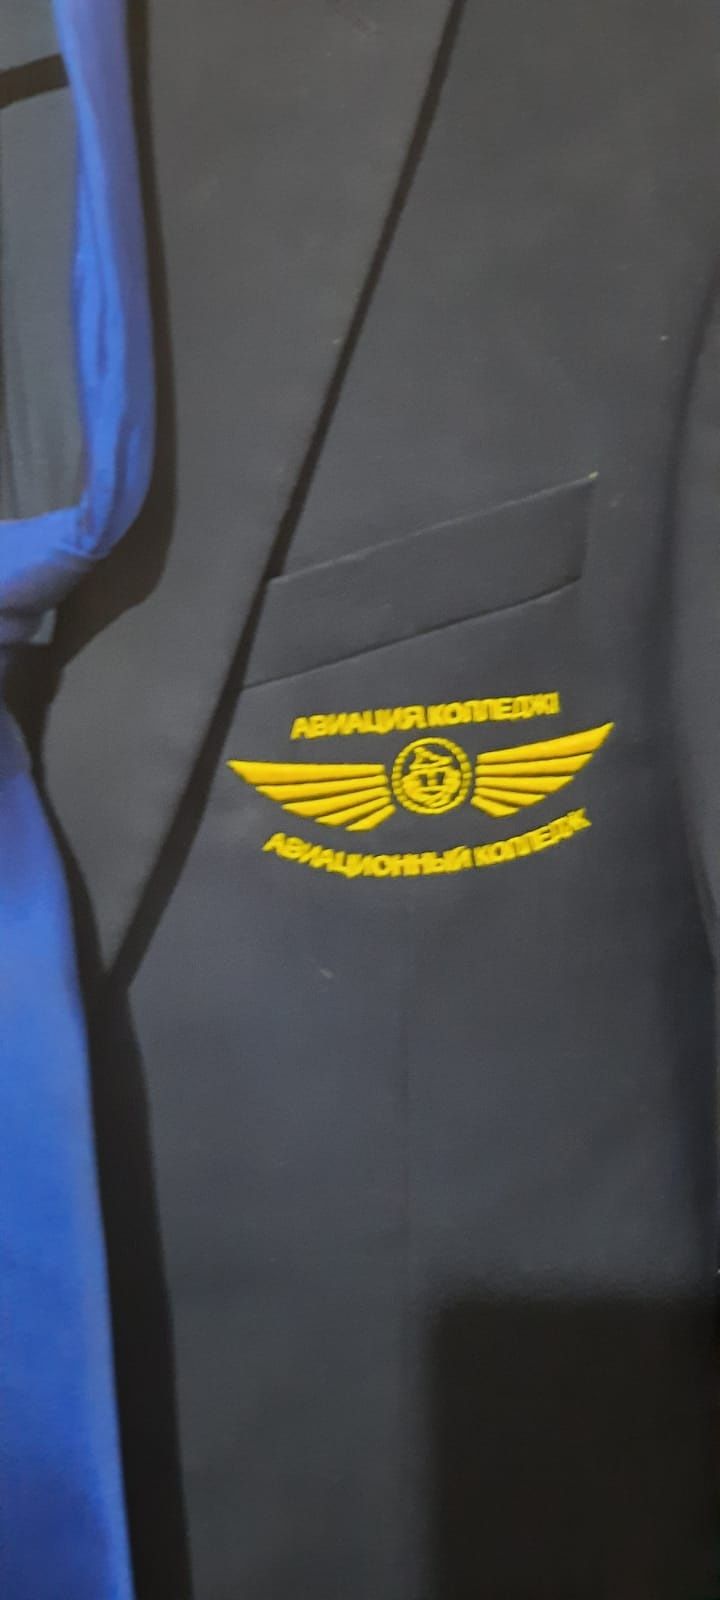 Продам пиджак АГА авиционного колледжа